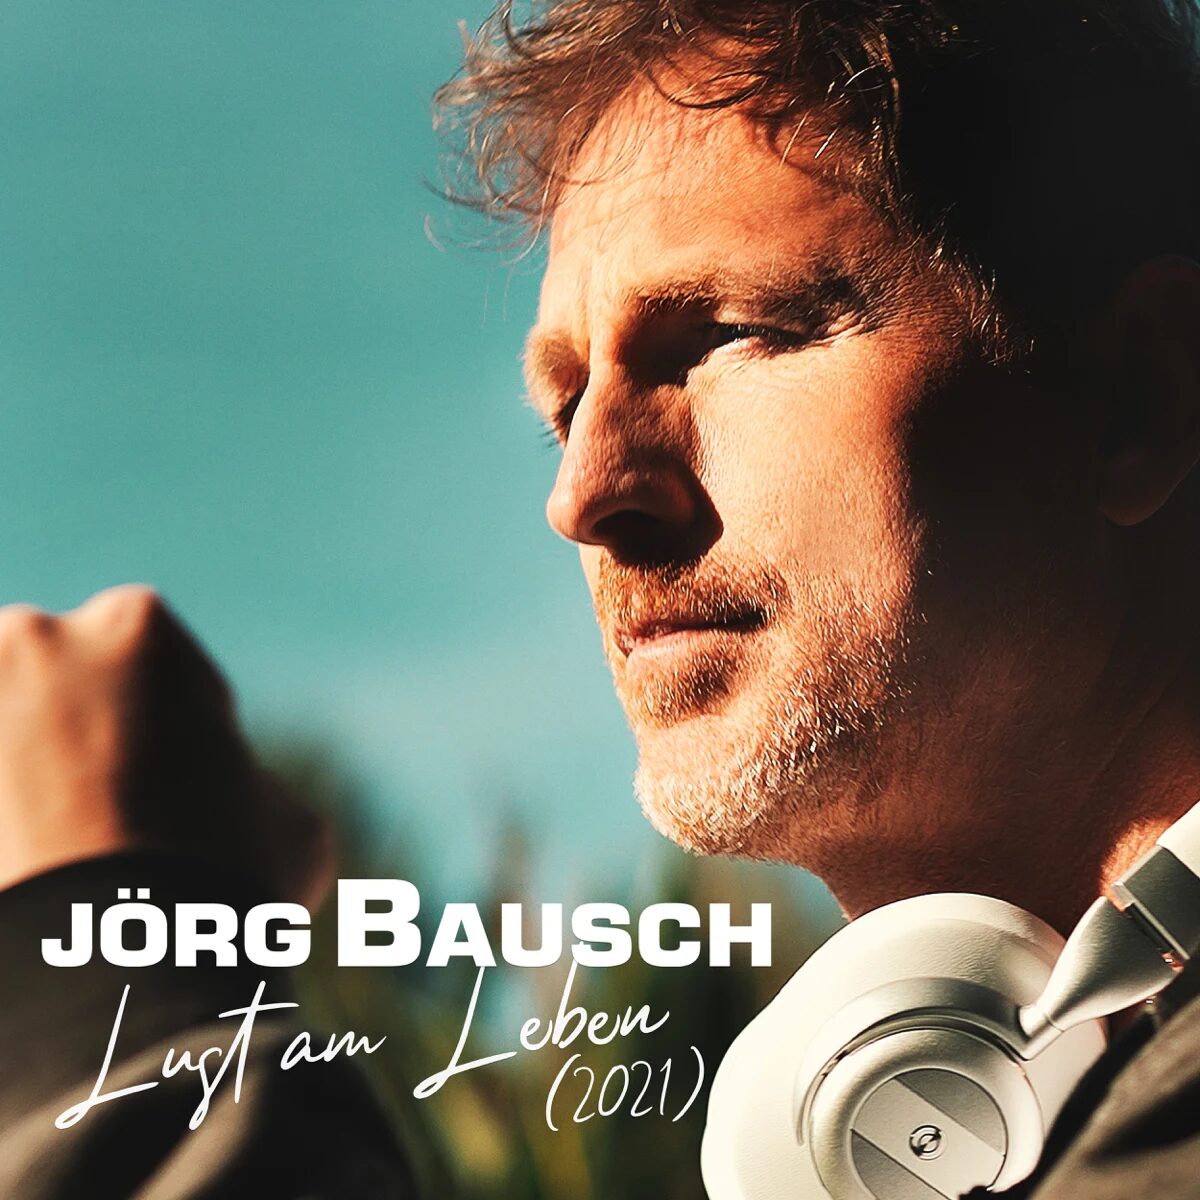 Jörg Bausch - Lust am Leben (2021) (2021)